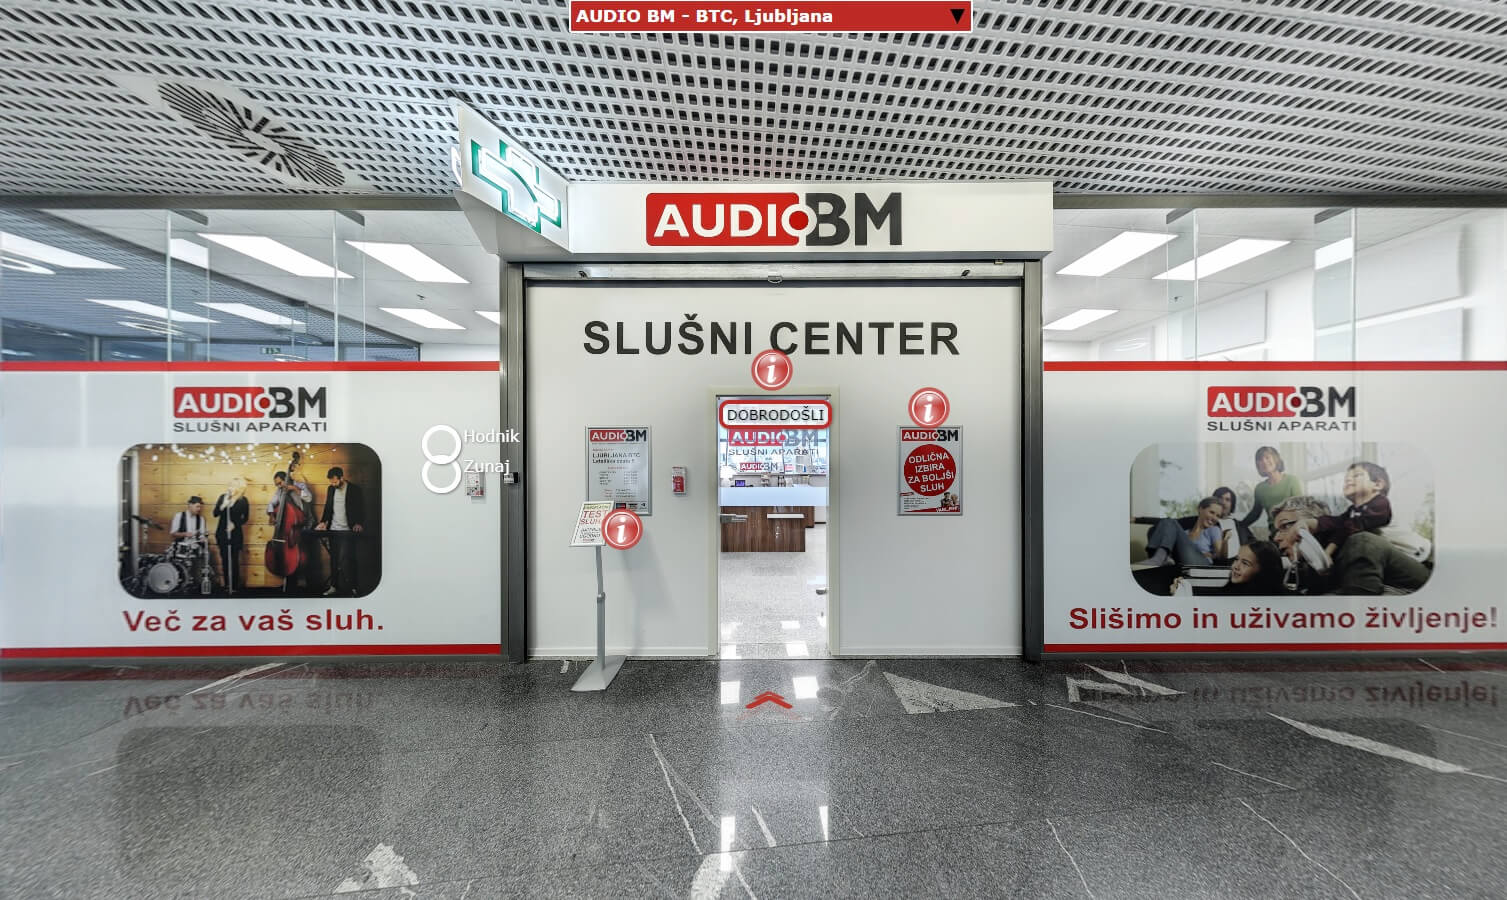 AUDIO-BM-slusni-centri-virtulni-obisk-lokacije-po-vsej-Sloveniji-slusni-aparati-baterije-spletna-trgovina-svetovanje